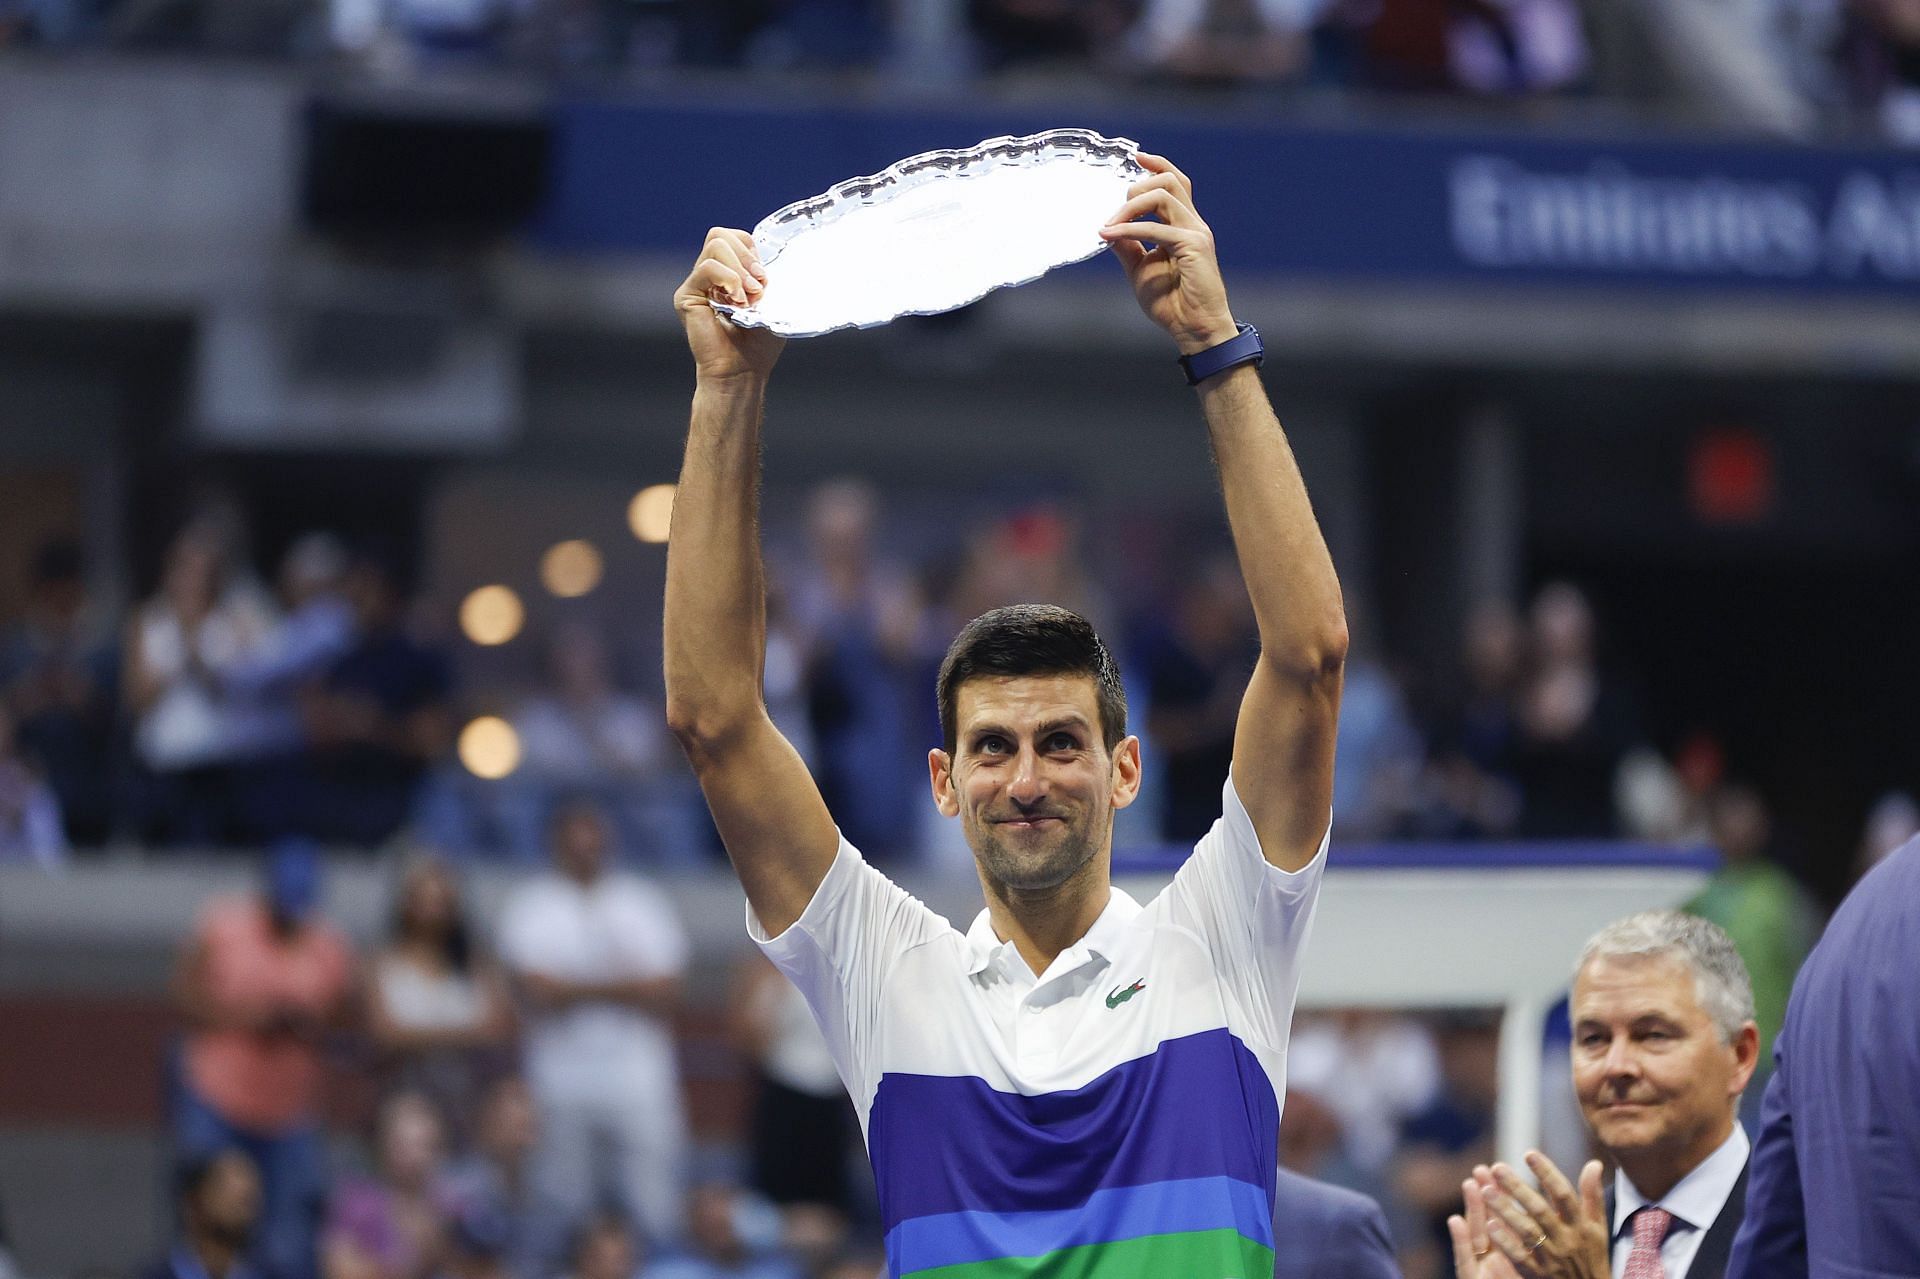 Novak Djokovic lost the 2021 US Open final to Daniil Medvedev